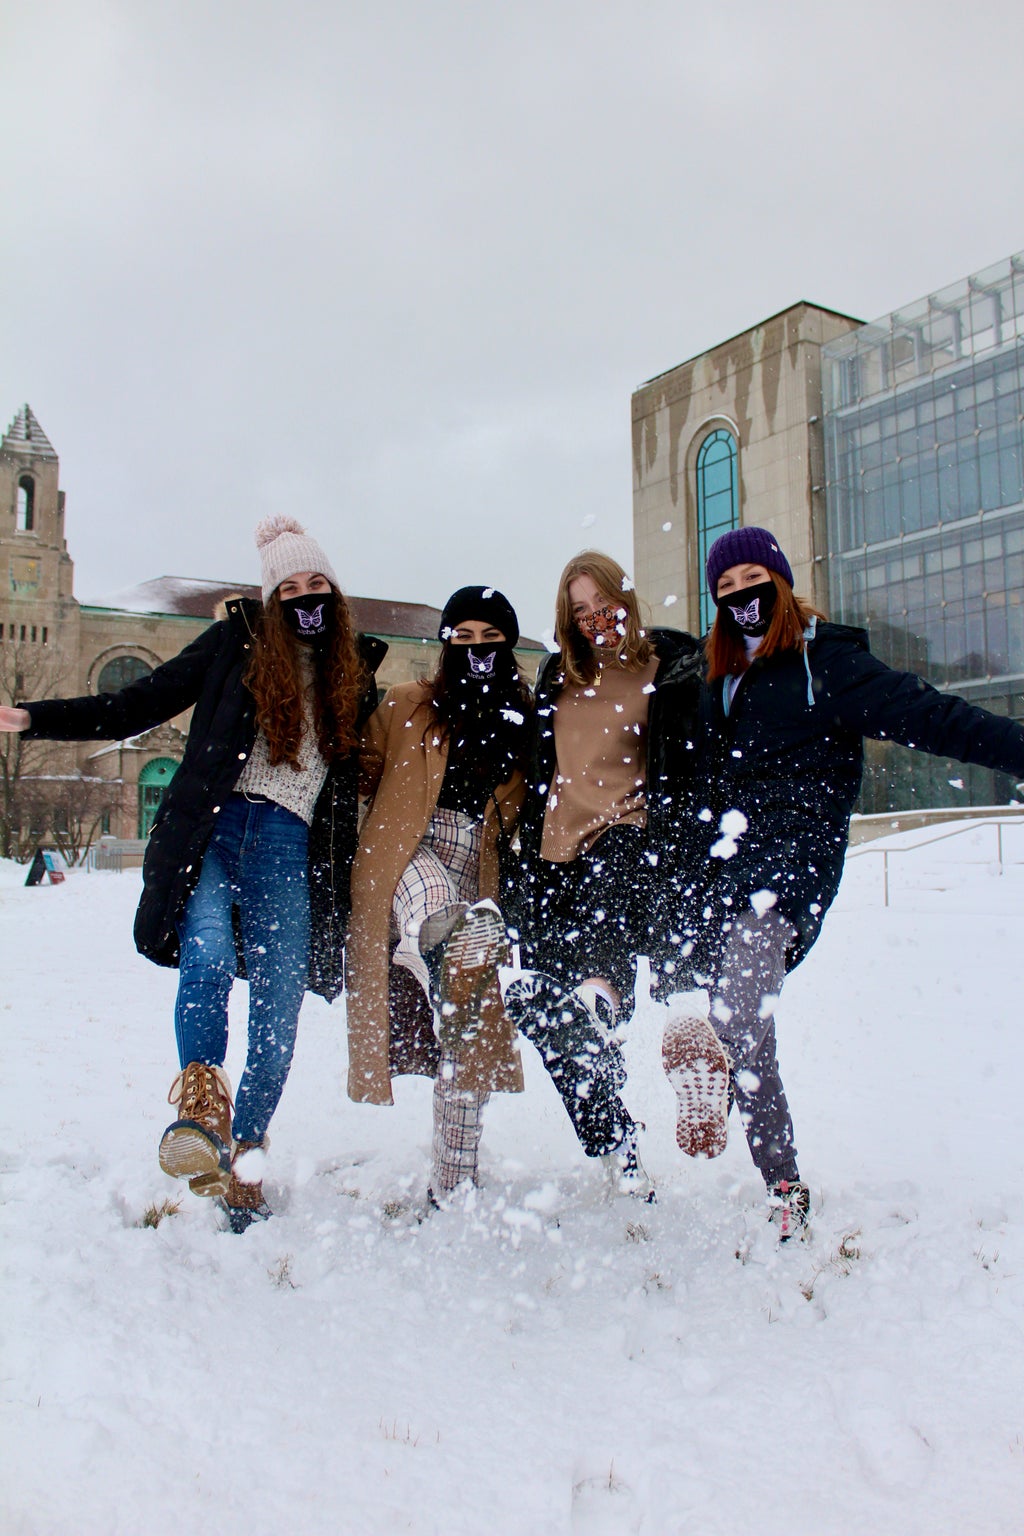 Four women kicking snow on campus